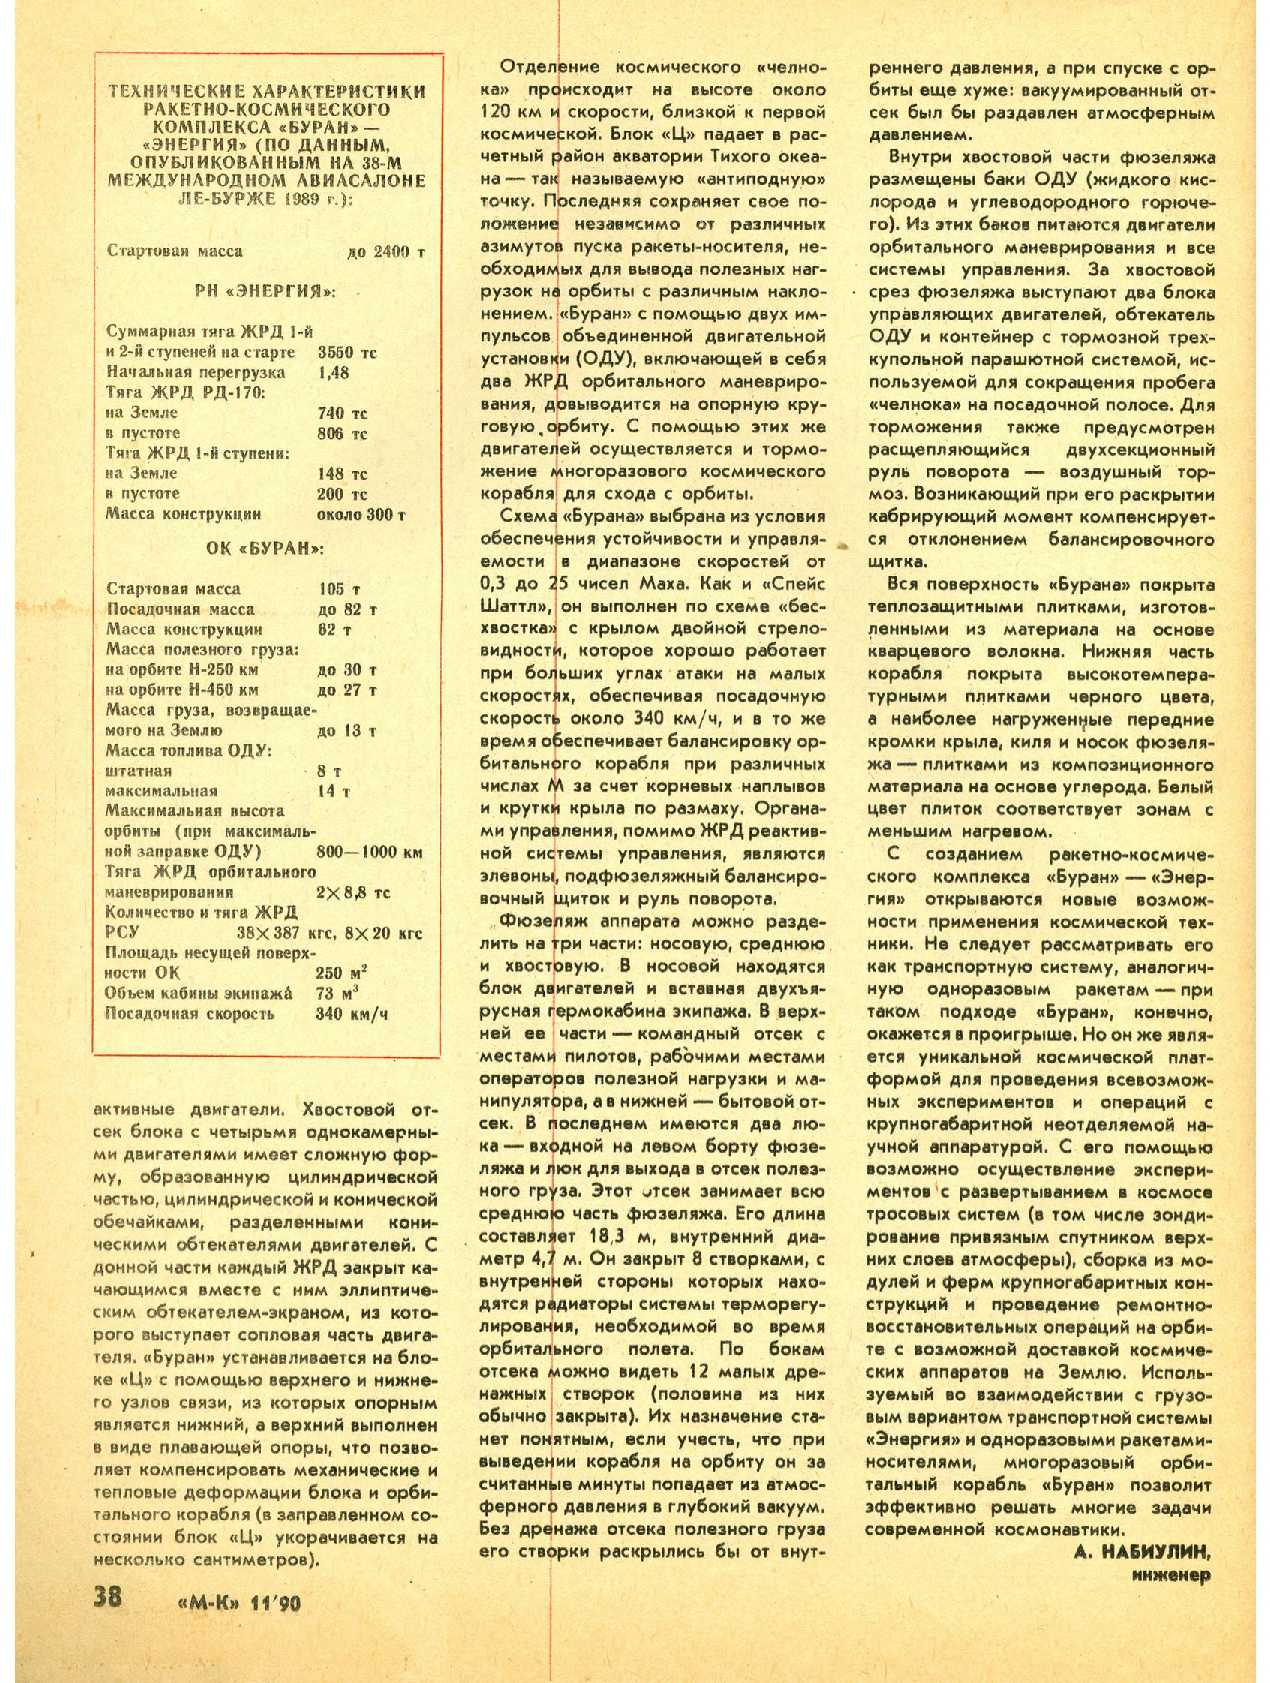 МК 11, 1990, 38 c.